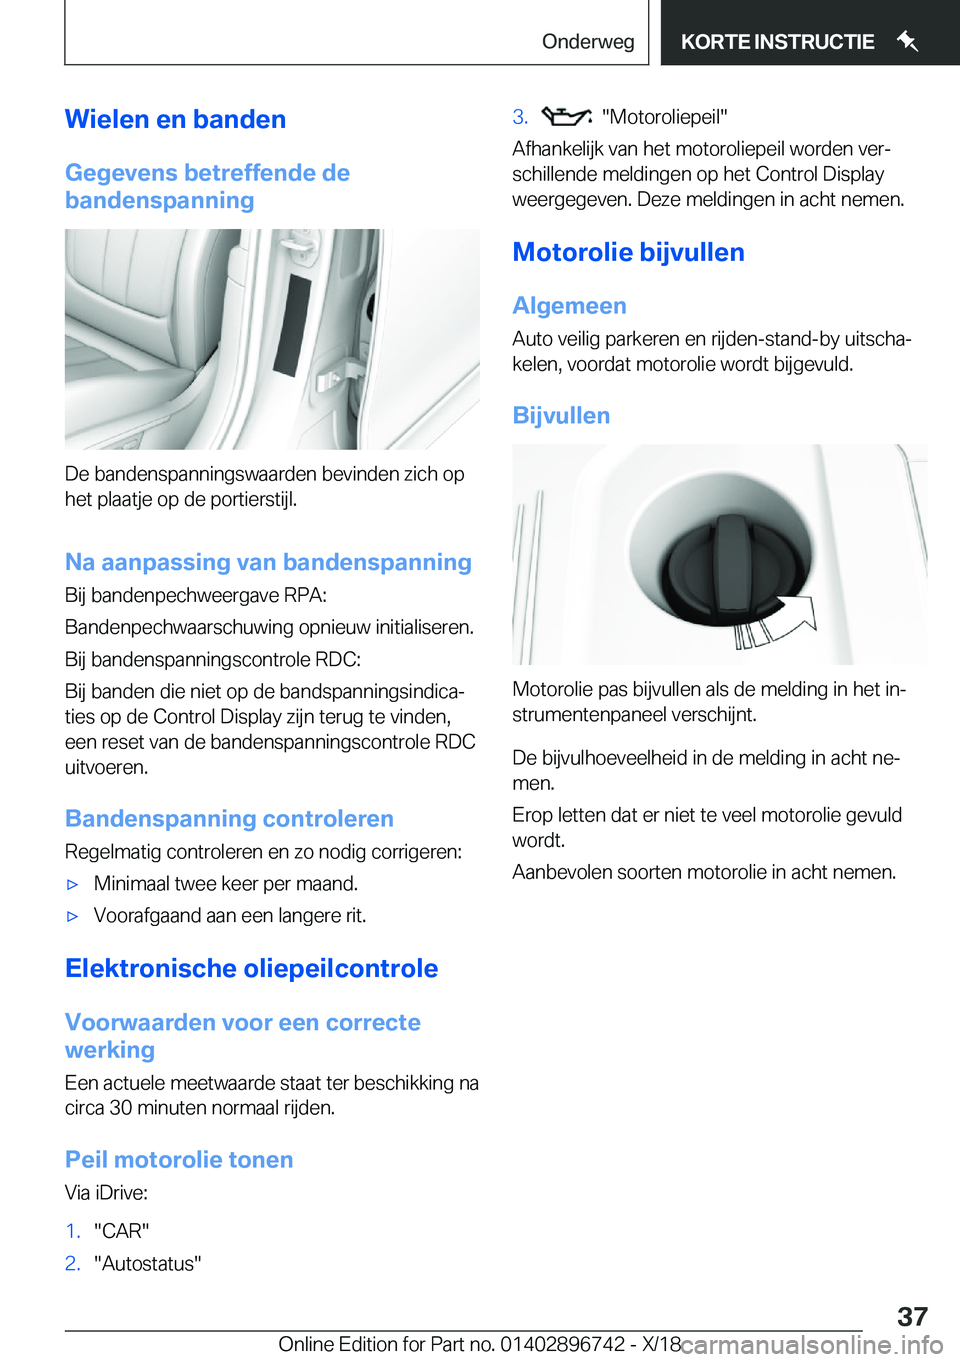 BMW X5 2019  Instructieboekjes (in Dutch) �W�i�e�l�e�n��e�n��b�a�n�d�e�n
�G�e�g�e�v�e�n�s��b�e�t�r�e�f�f�e�n�d�e��d�e
�b�a�n�d�e�n�s�p�a�n�n�i�n�g
�D�e��b�a�n�d�e�n�s�p�a�n�n�i�n�g�s�w�a�a�r�d�e�n��b�e�v�i�n�d�e�n��z�i�c�h��o�p �h�e�t